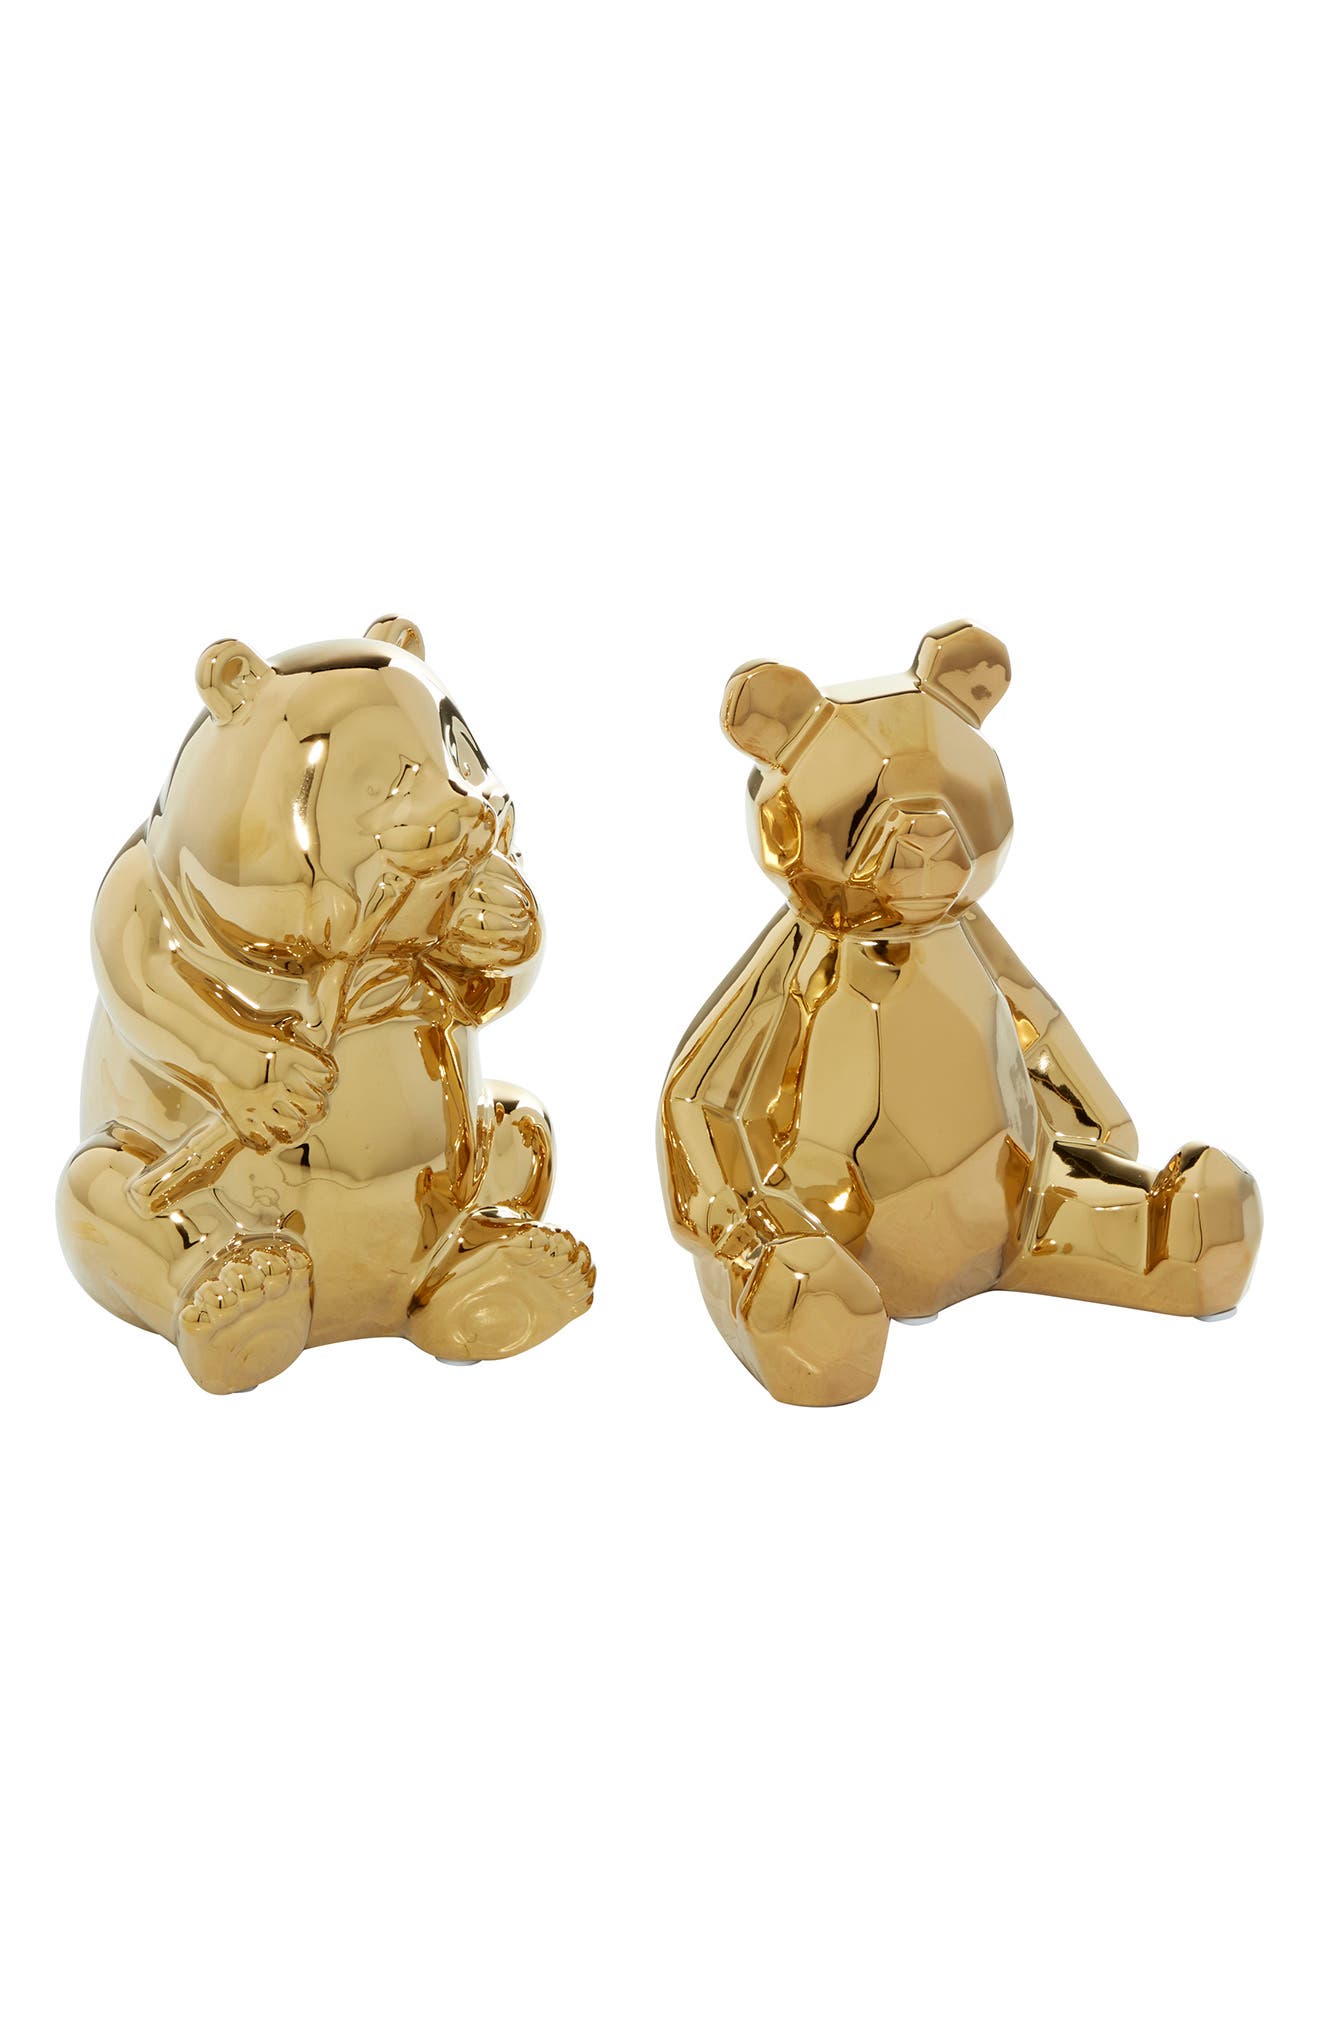 Скульптуры гламурных медведей - набор из 2 шт. COSMO BY COSMOPOLITAN